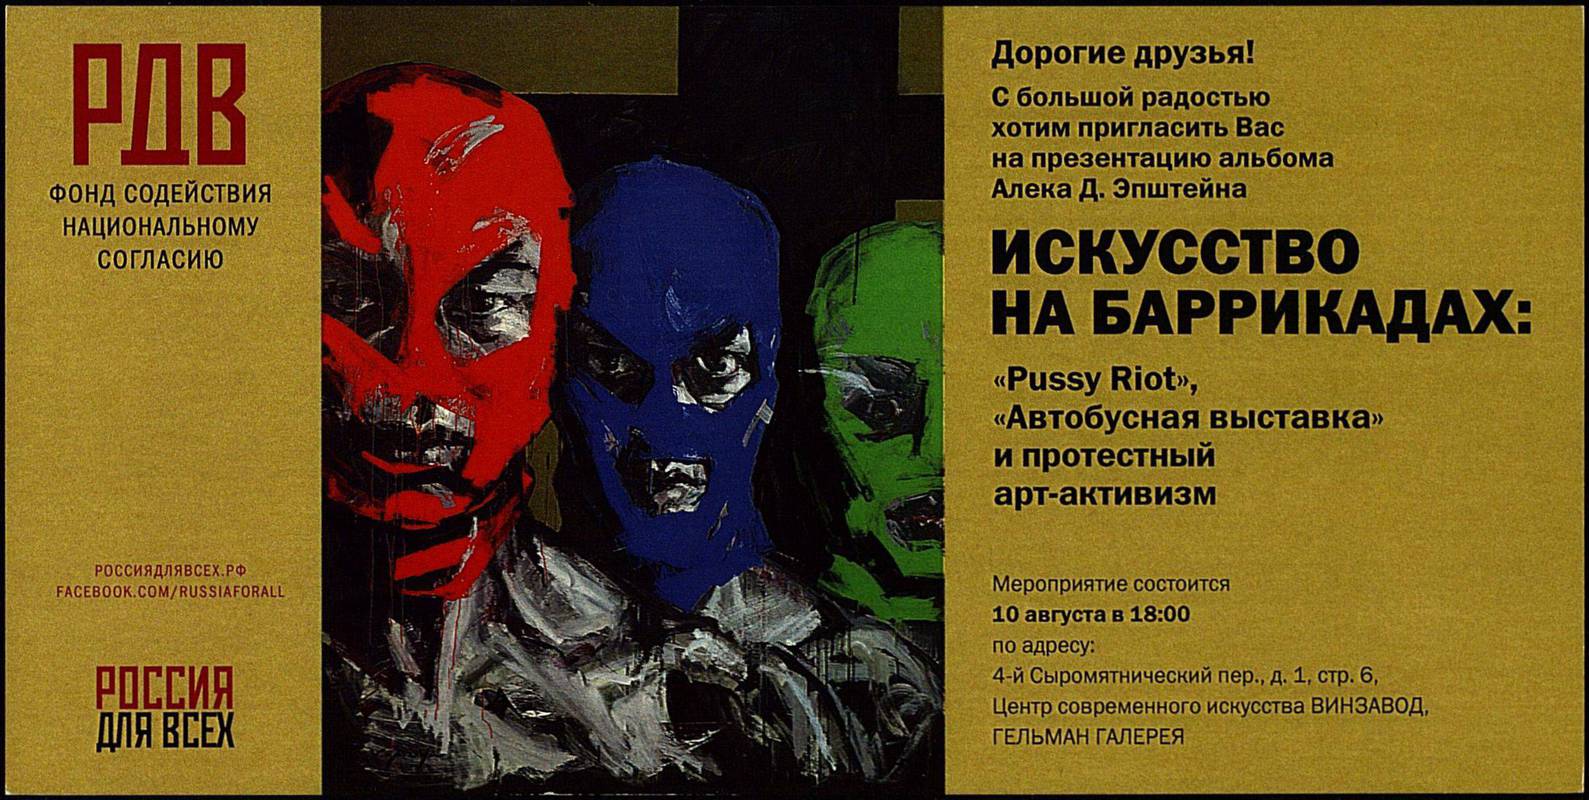 Алек Д. Эпштейн. Искусство на баррикадах: Pussy Riot, «Автобусная выставка» и протестный арт-активизм